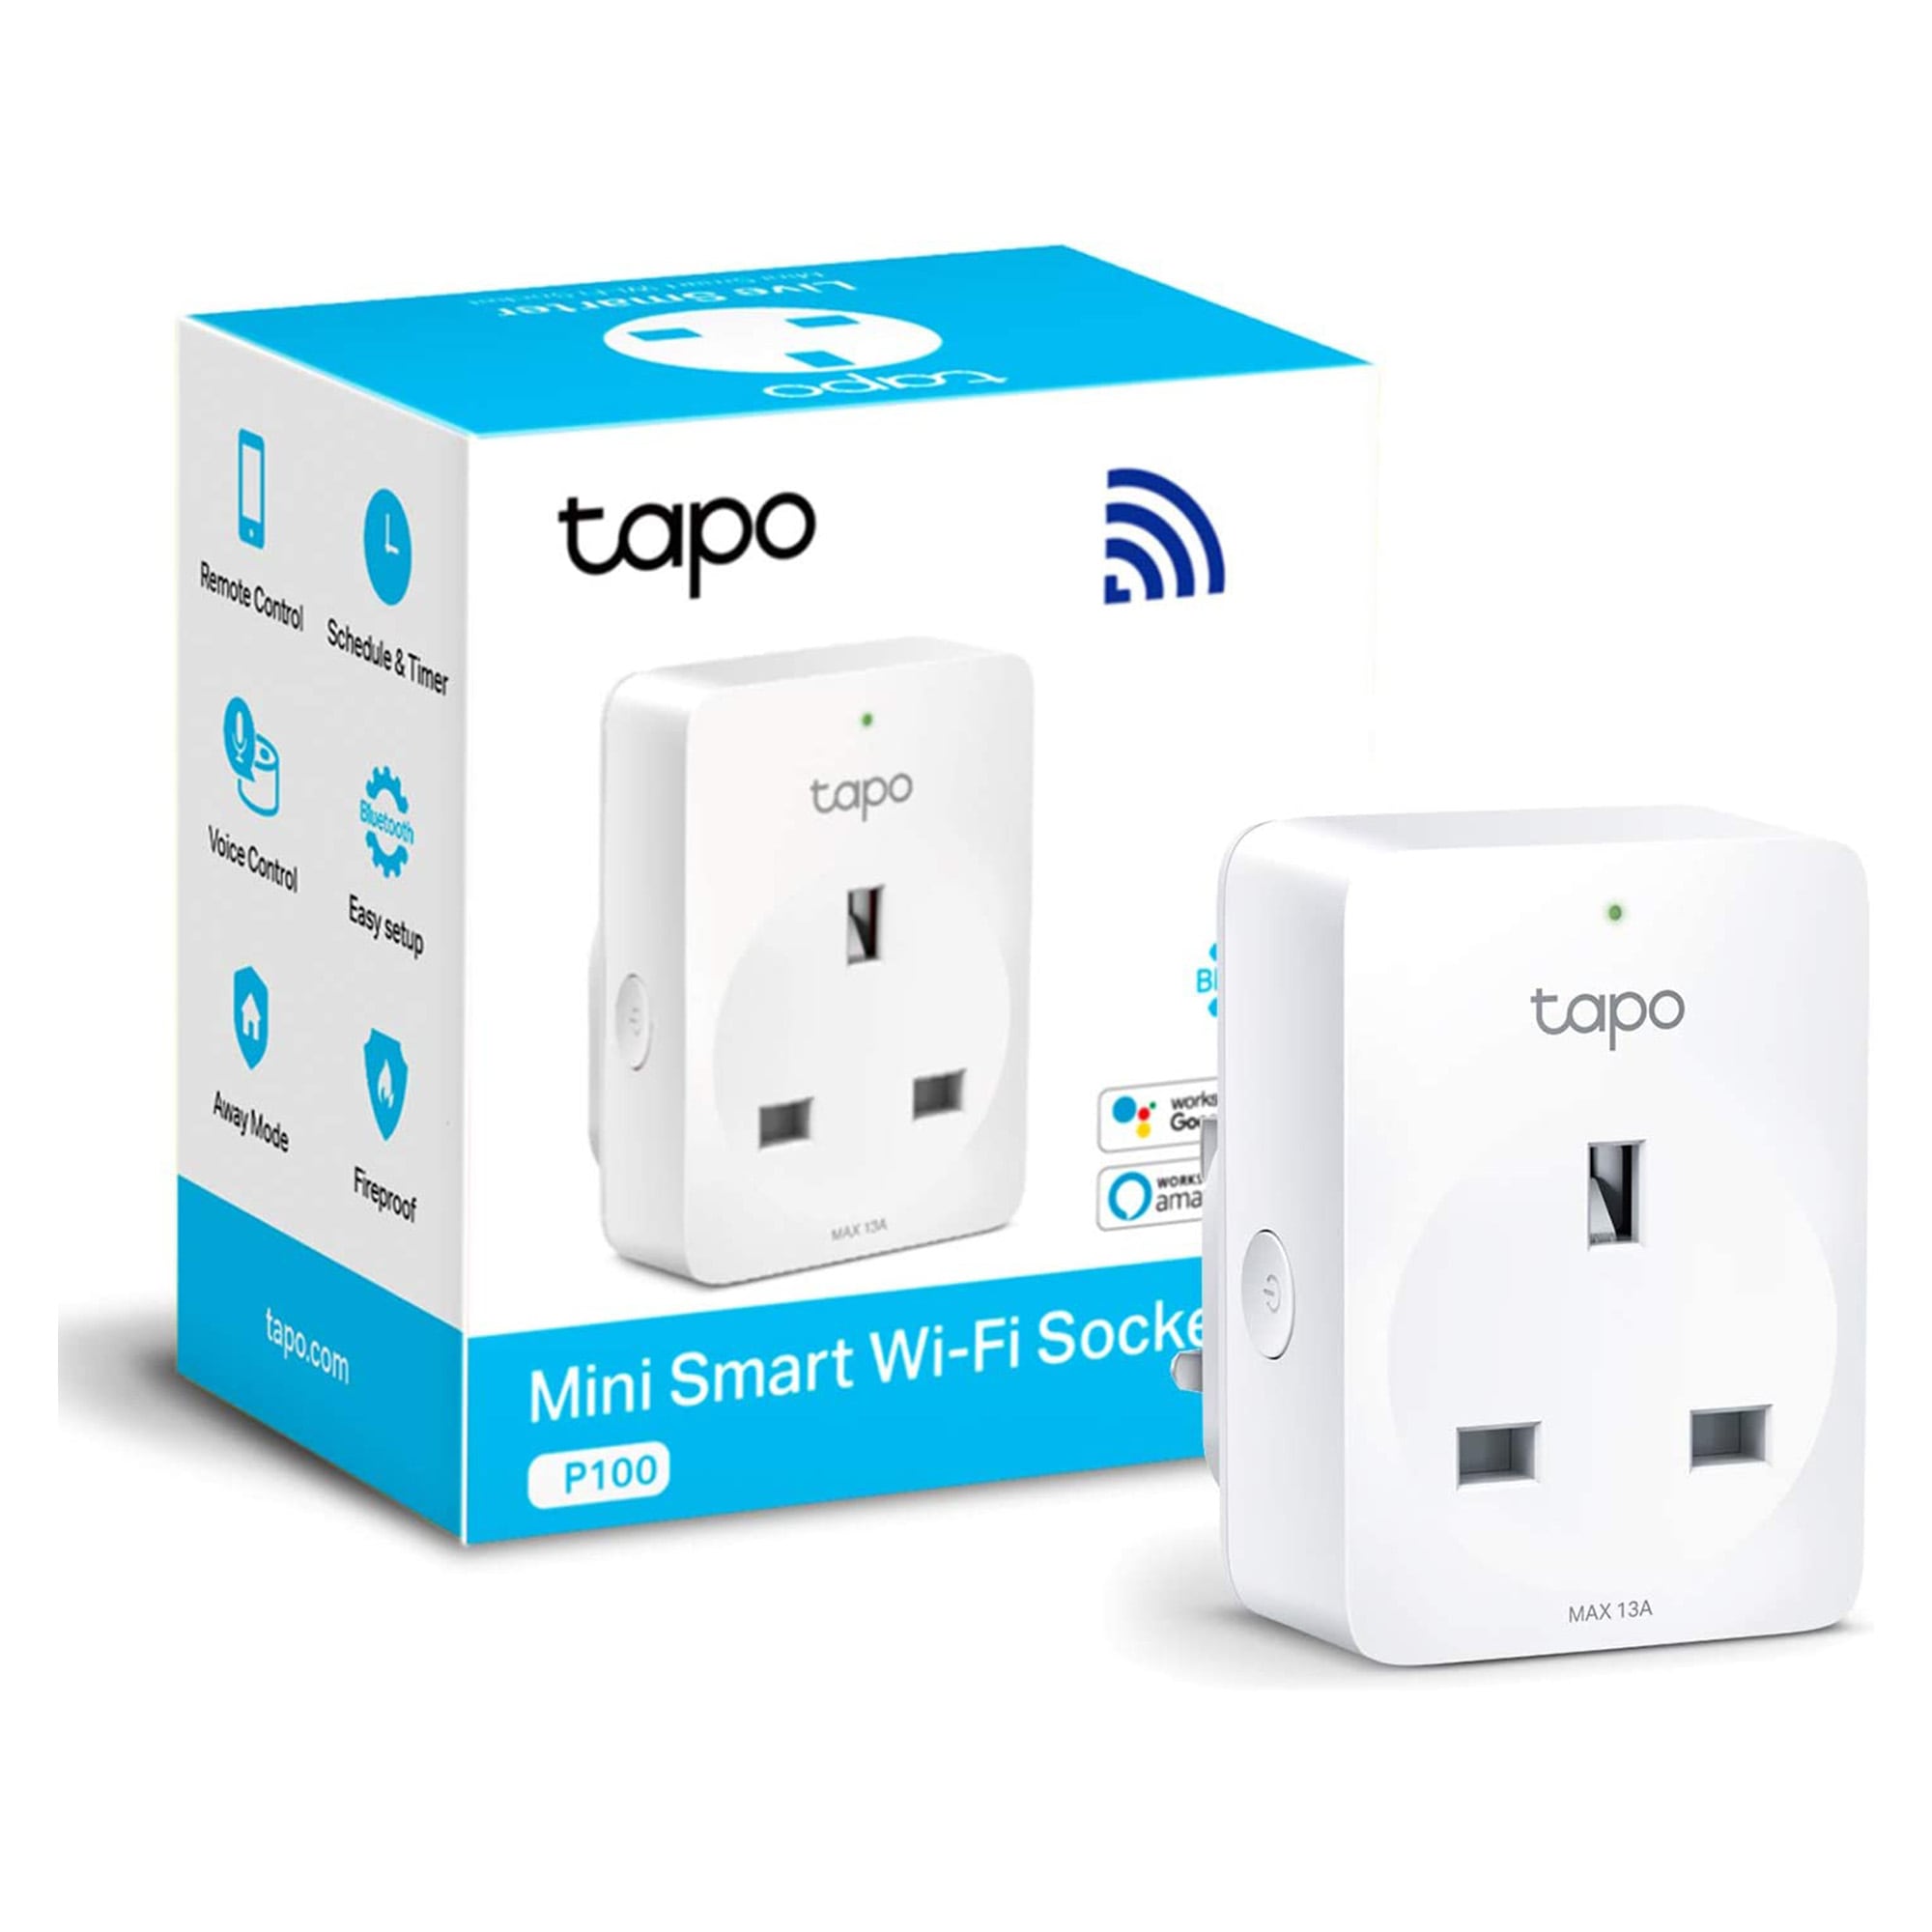 Tapo P110, Mini Smart Wi-Fi Socket, Energy Monitoring